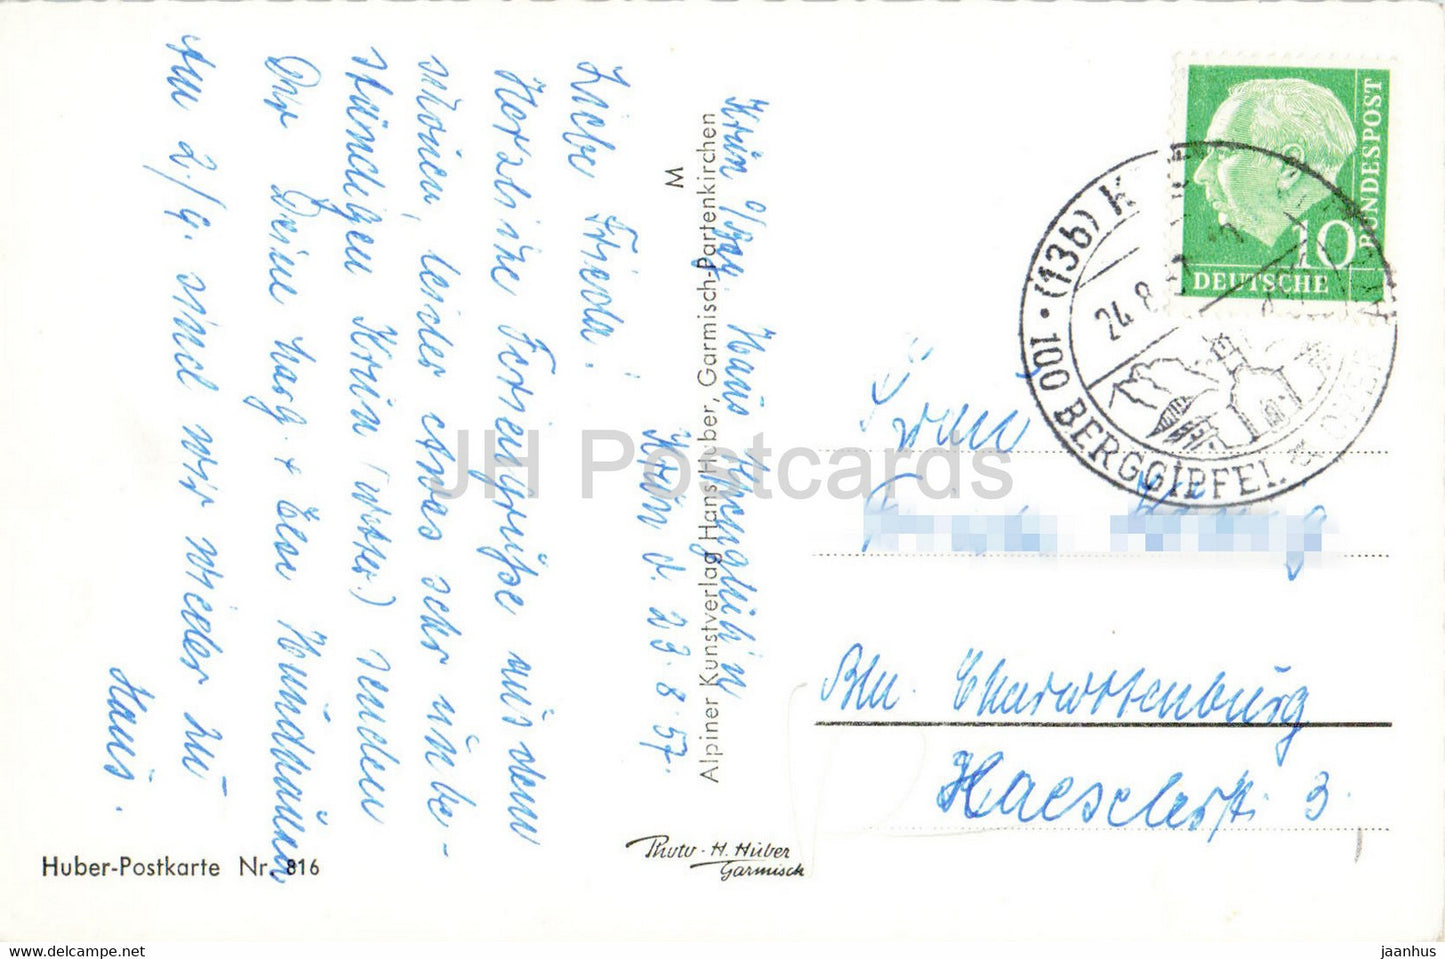 Krun gegen Zugspitzgruppe 2964 m - alte Postkarte - 1957 - Deutschland - gebraucht